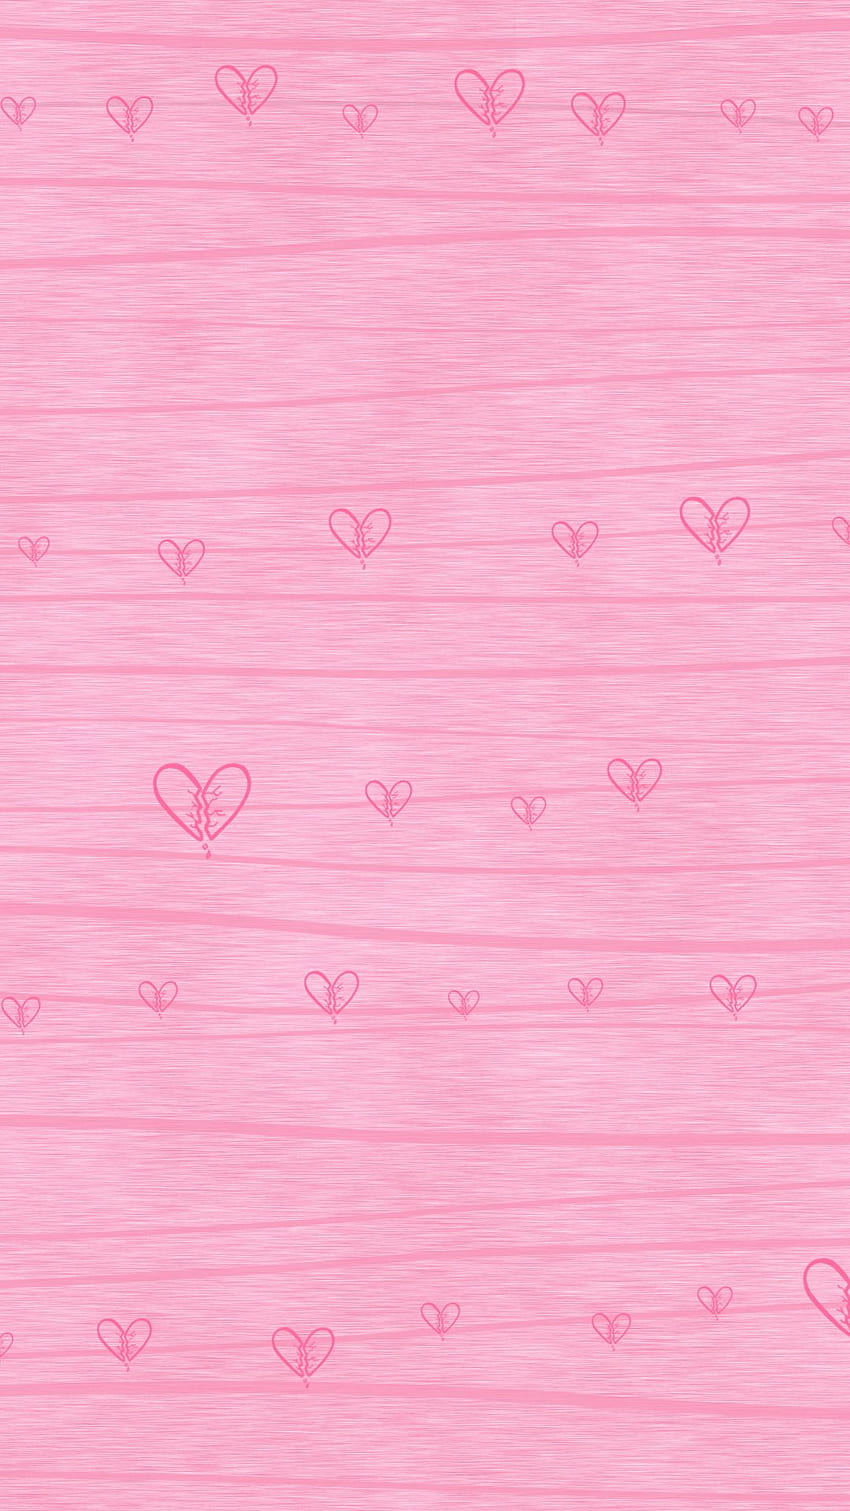 Bienvenido a. Iphone rosa, iPhone de corazón, patrón de iPhone, linda chica rosa fondo de pantalla del teléfono